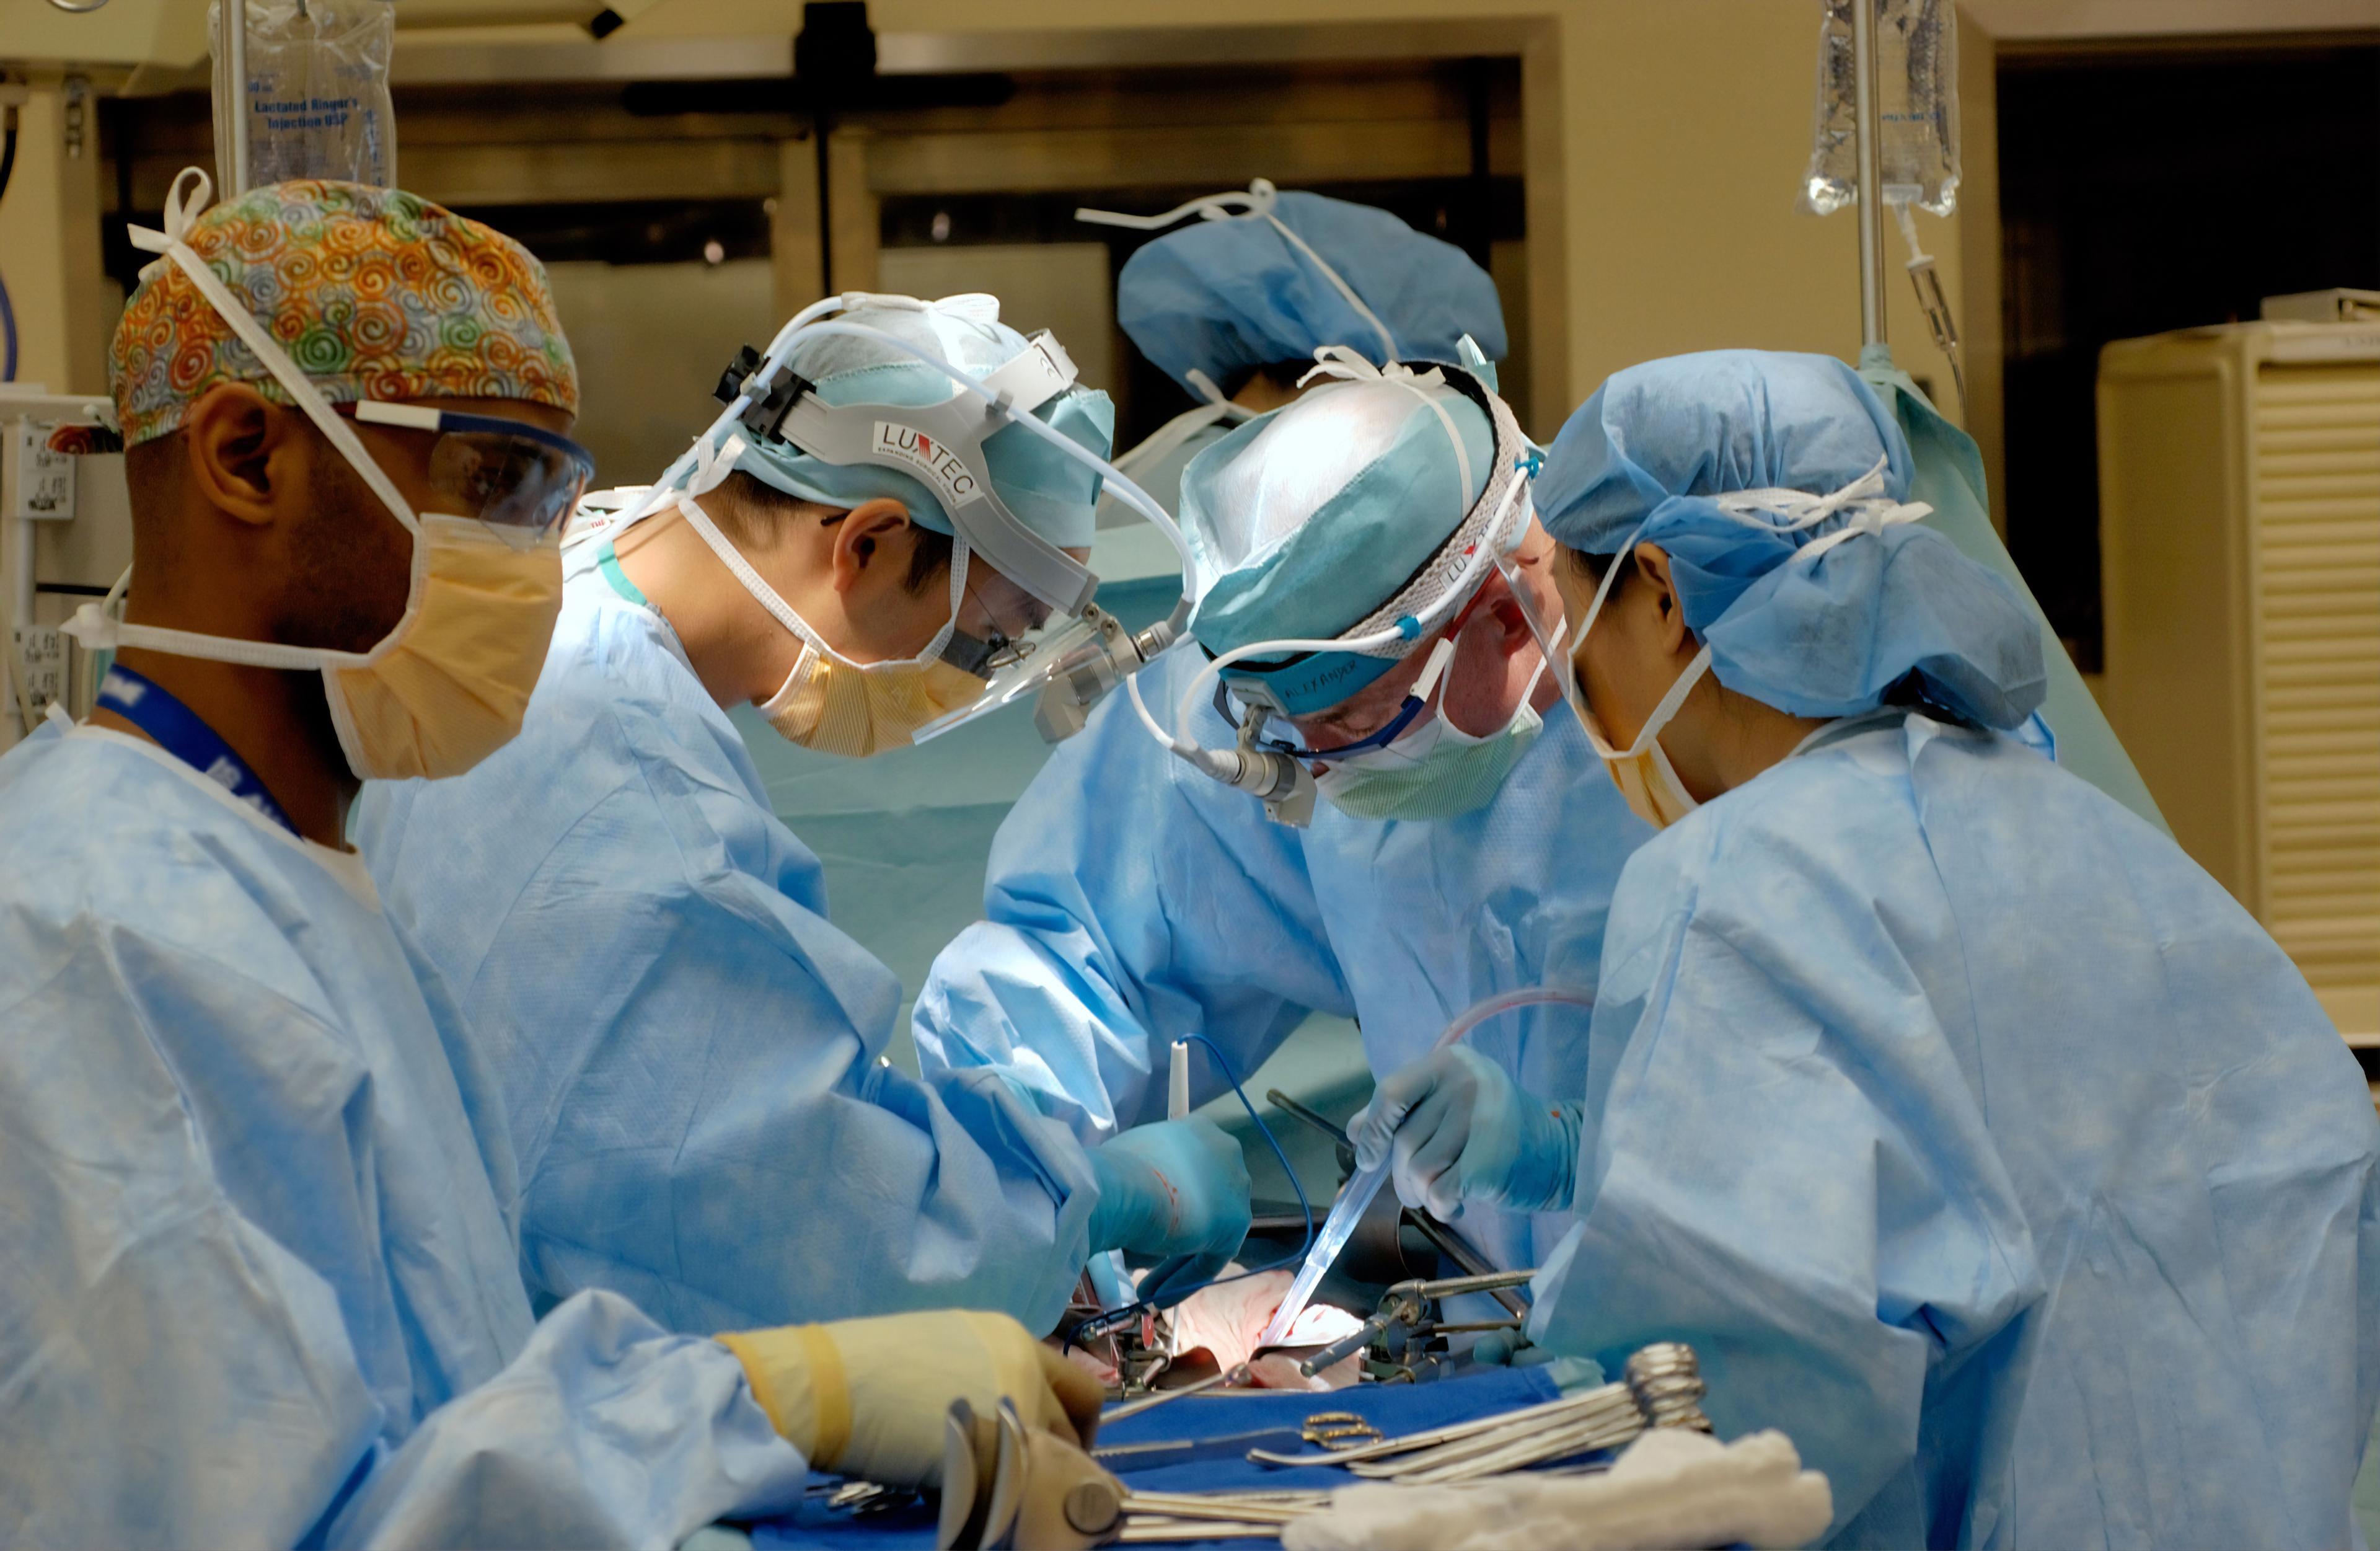 Operacja przeszczepienia serca - jak wygląda życie po przeszczepie serca? Jakie są wskazania i przeciwwskazania do operacji? Jak wygląda życie po transplantacji? 